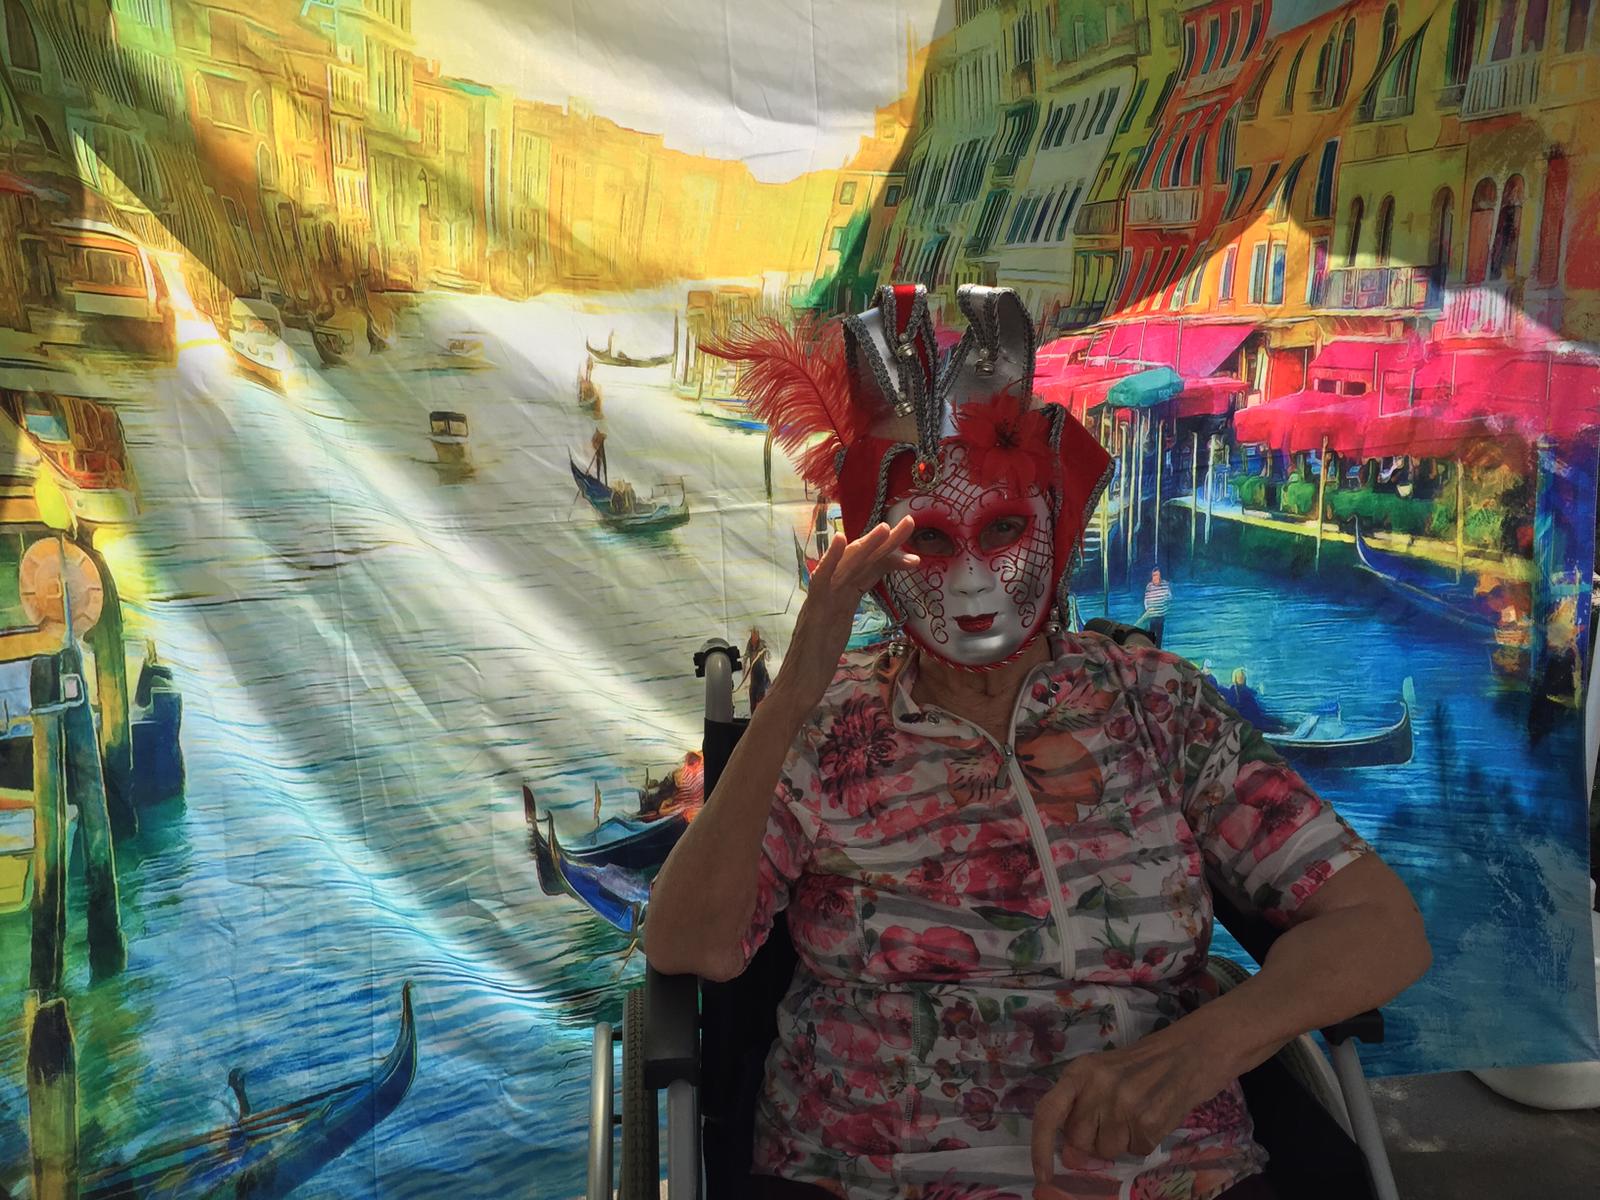 Bewohnerin mit Maske winkt bei der italienischen Woche - Venedig im Seniorenzentrum AGO Trier 